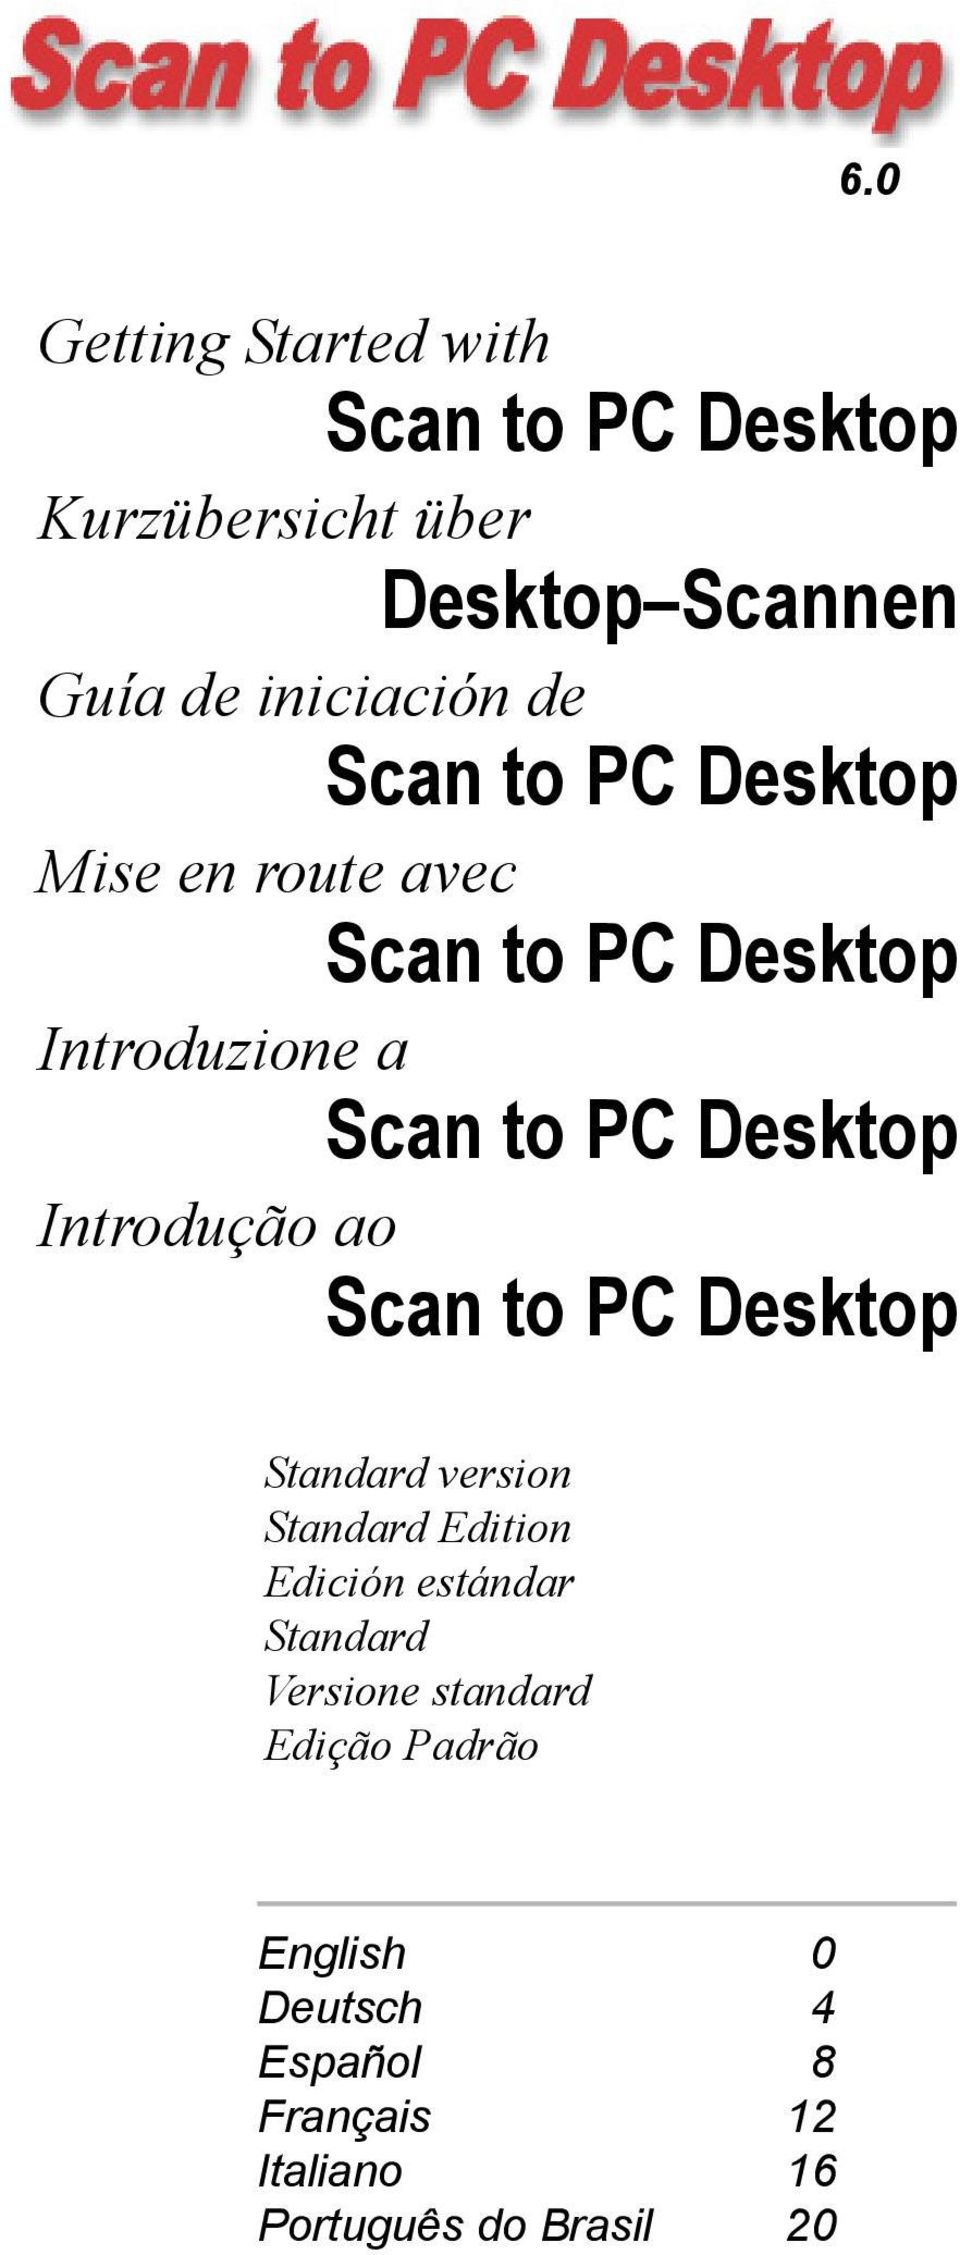 Introdução ao Scan to PC Desktop Standard version Standard Edition Edición estándar Standard